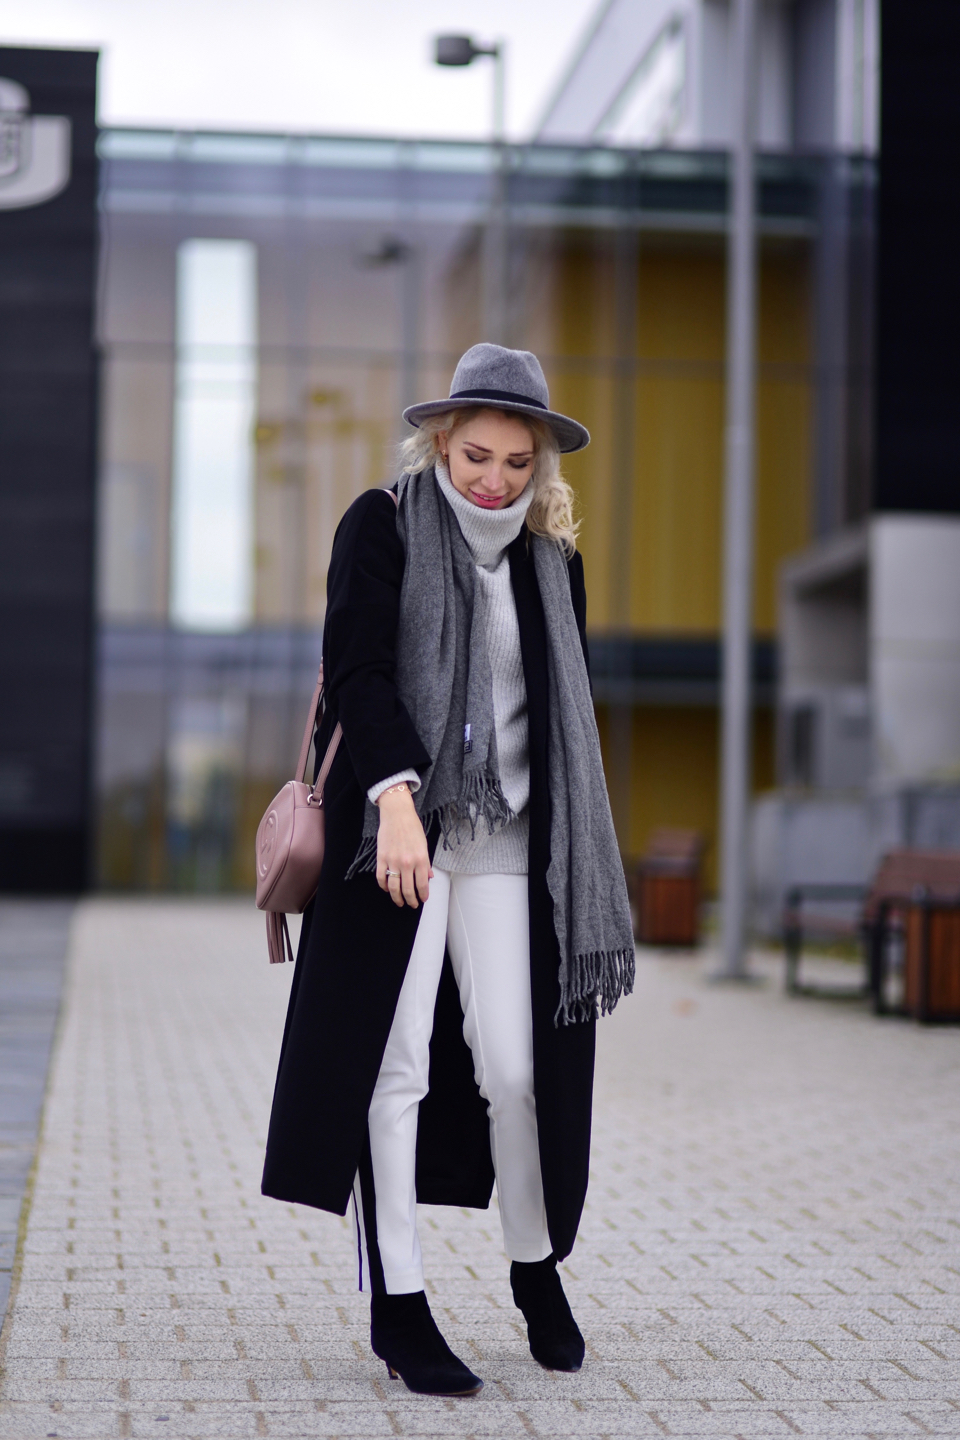 białe-spodnie-czarne-botki-czarny-płaszcz-torebka-gucci-soho-kapelusz-stylizacja-zimowa-stylizacje